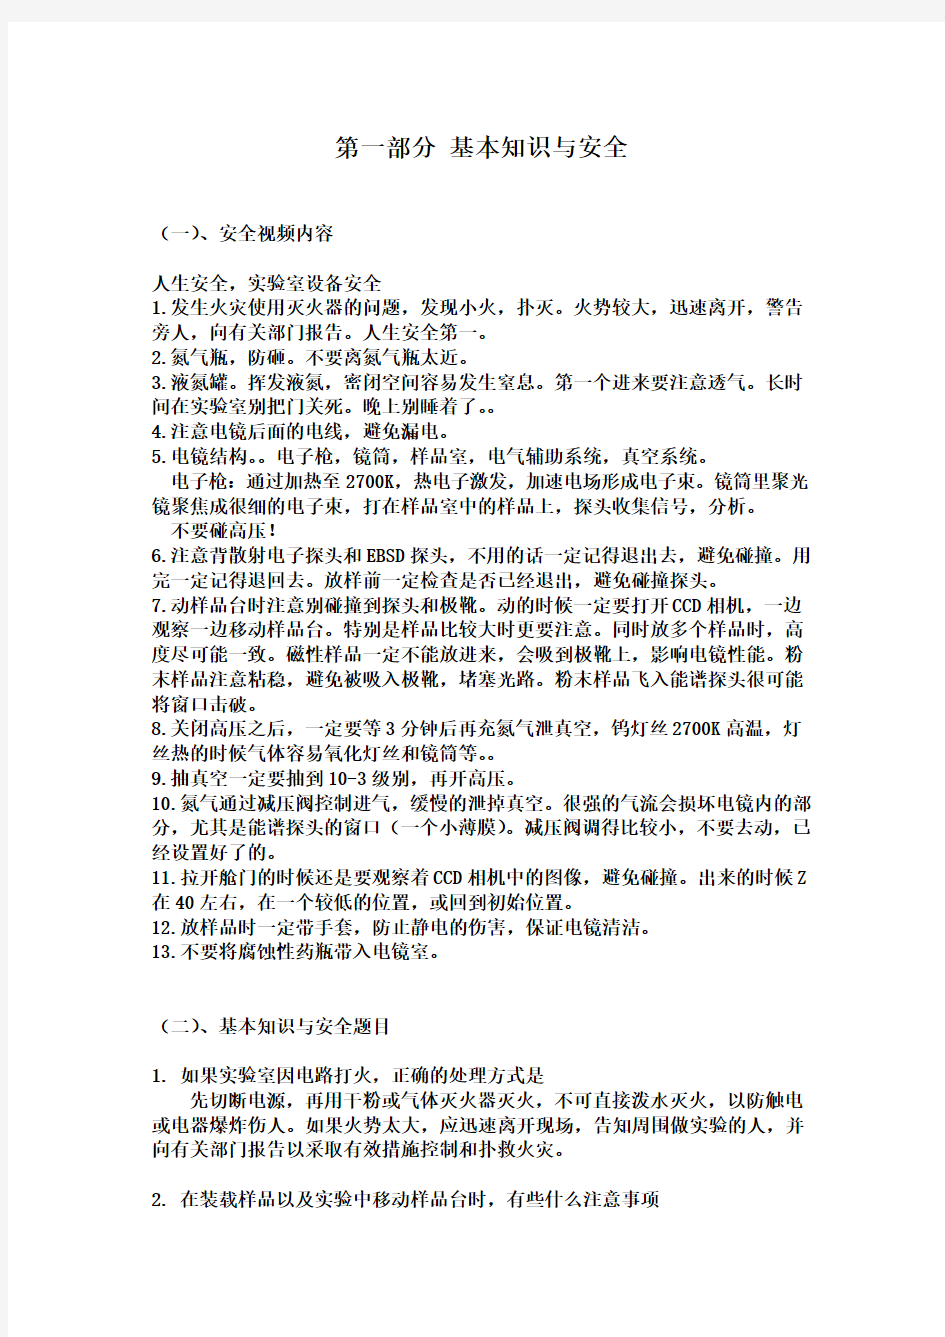 重庆大学扫描电镜理论考试题目汇总